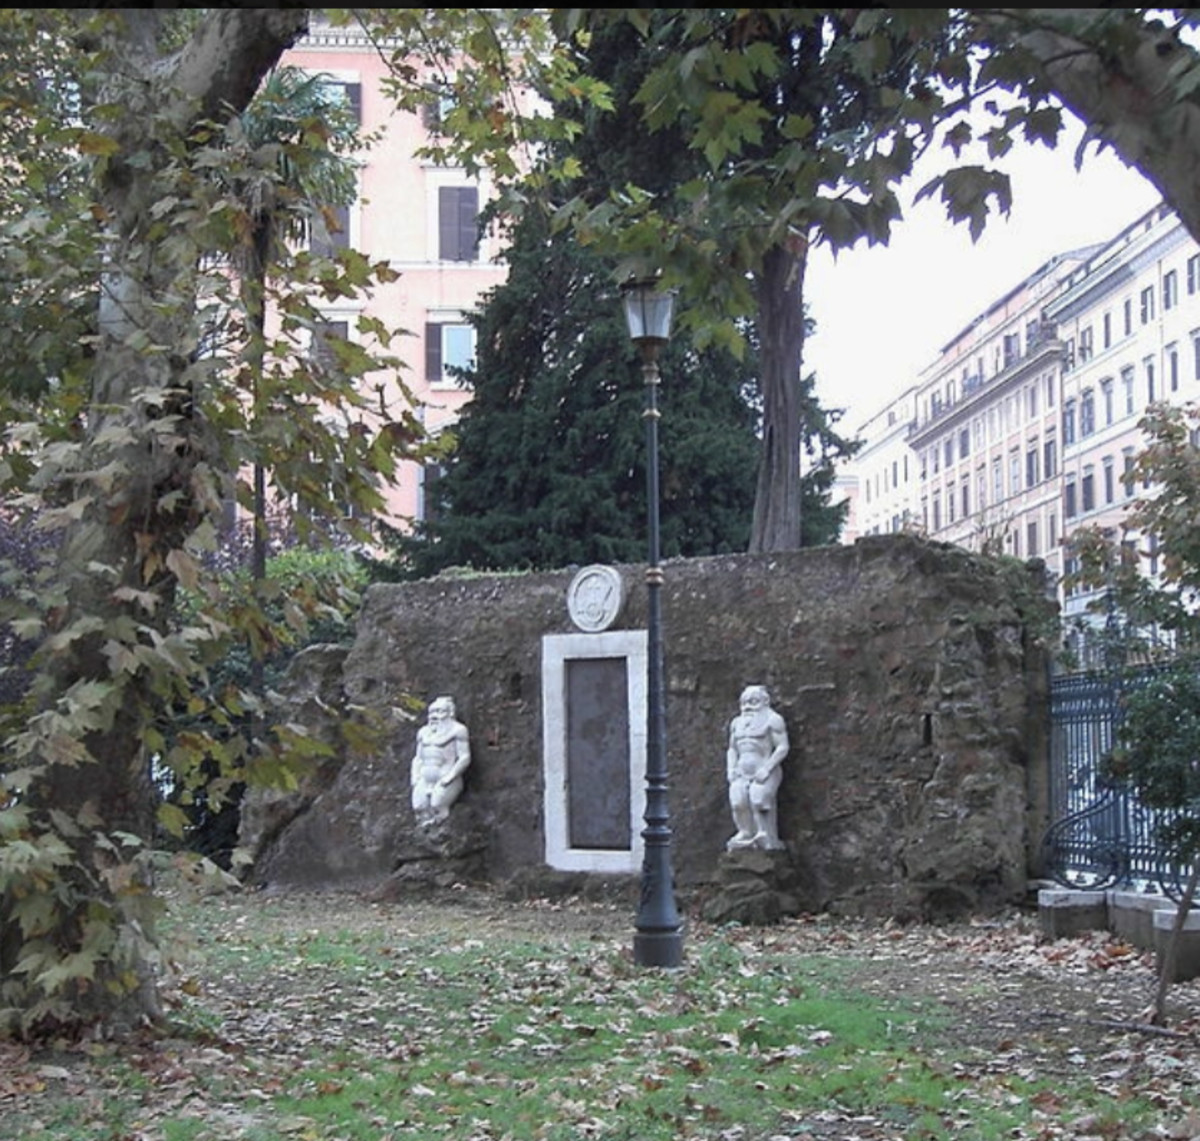 The Magic Door in Rome